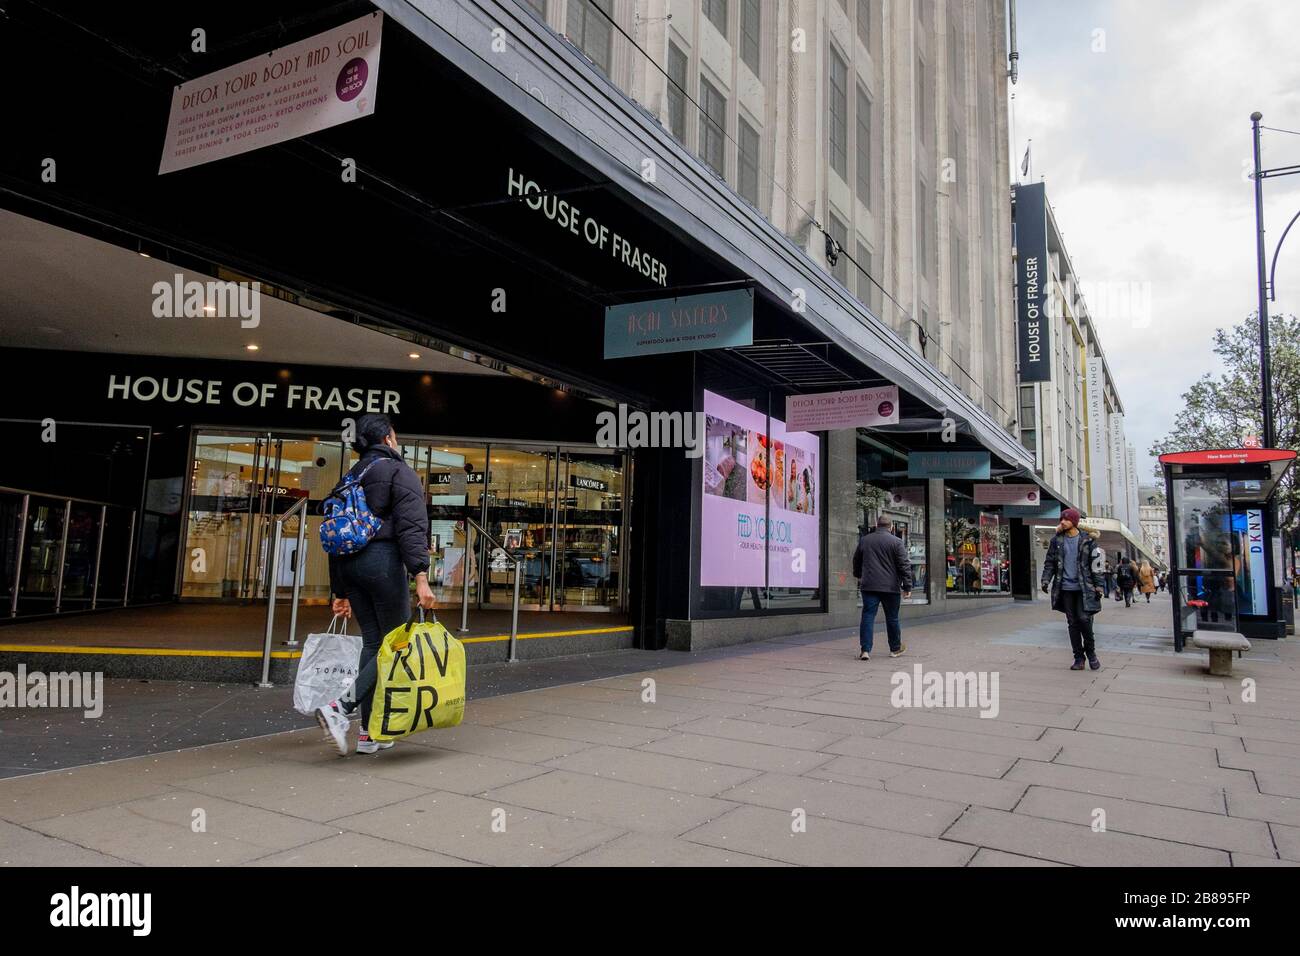 Londra, Regno Unito. 20 marzo 2020. I negozi di Oxford Street ricevono pochissimi clienti mentre la gente si allontana dal centro di Londra. Foto Stock